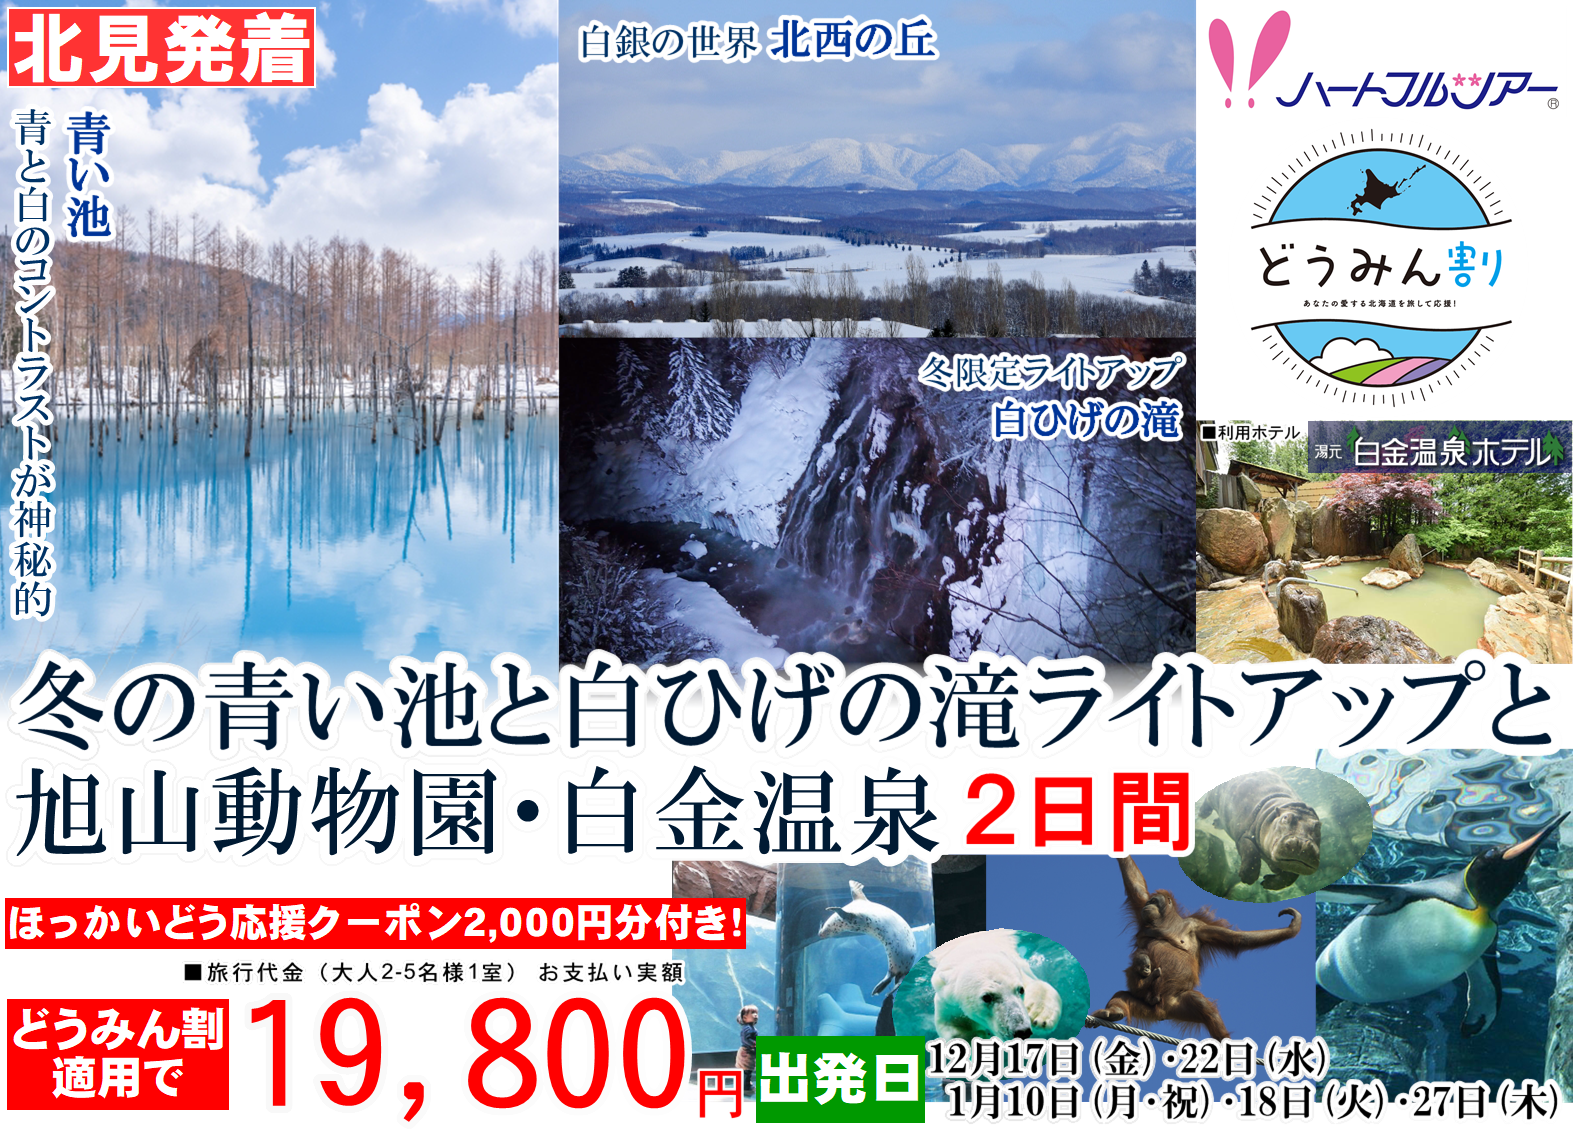 冬の青い池と白ひげの滝ライトアップと旭山動物園・白金温泉 2日間